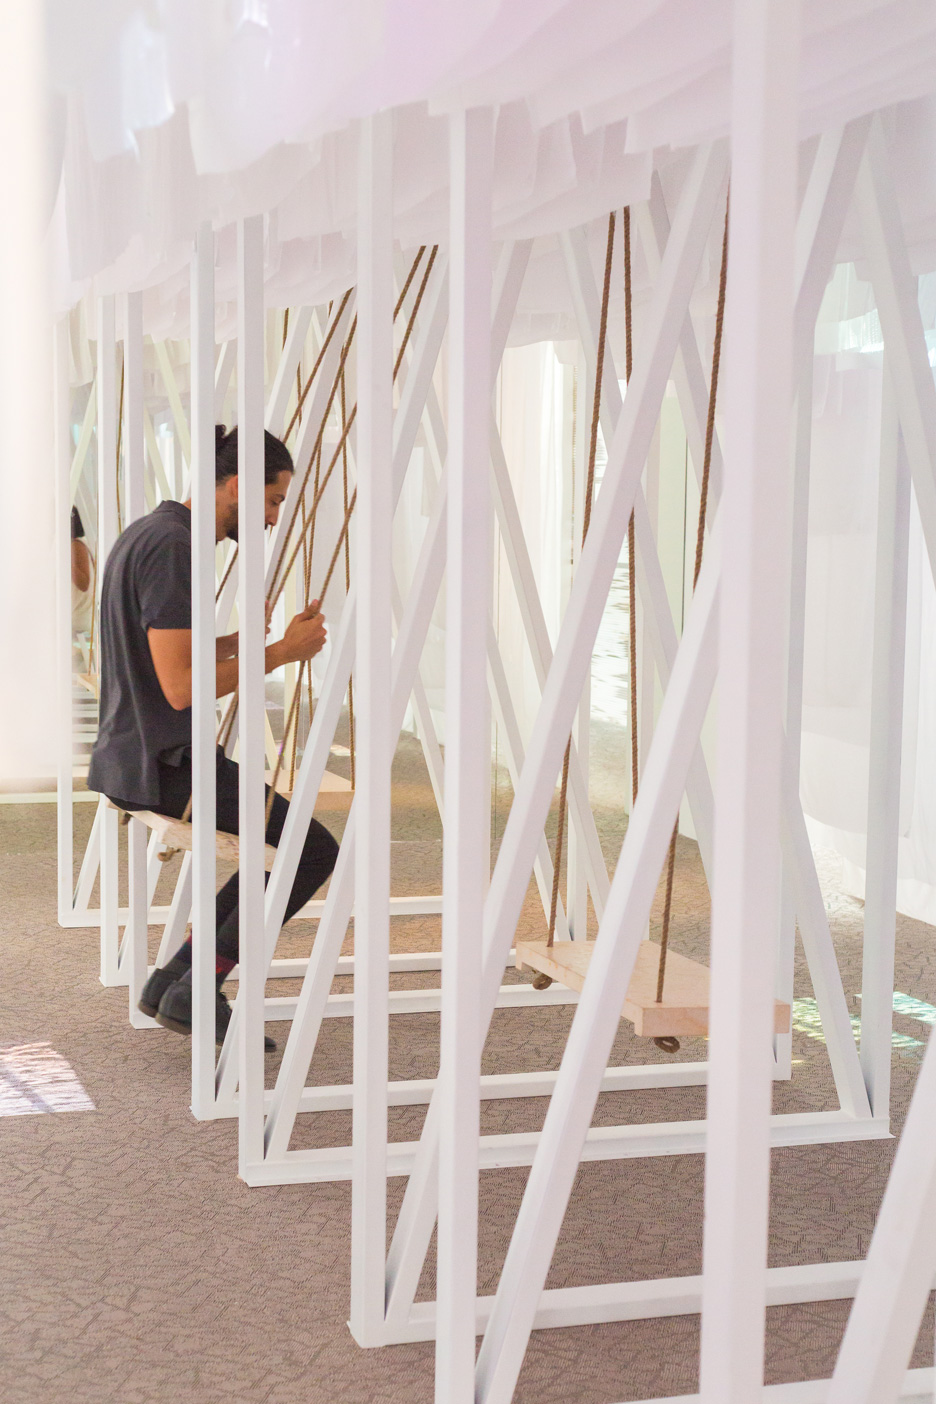 Jordan Abwab pavilion at Dubai Design Week 2015 